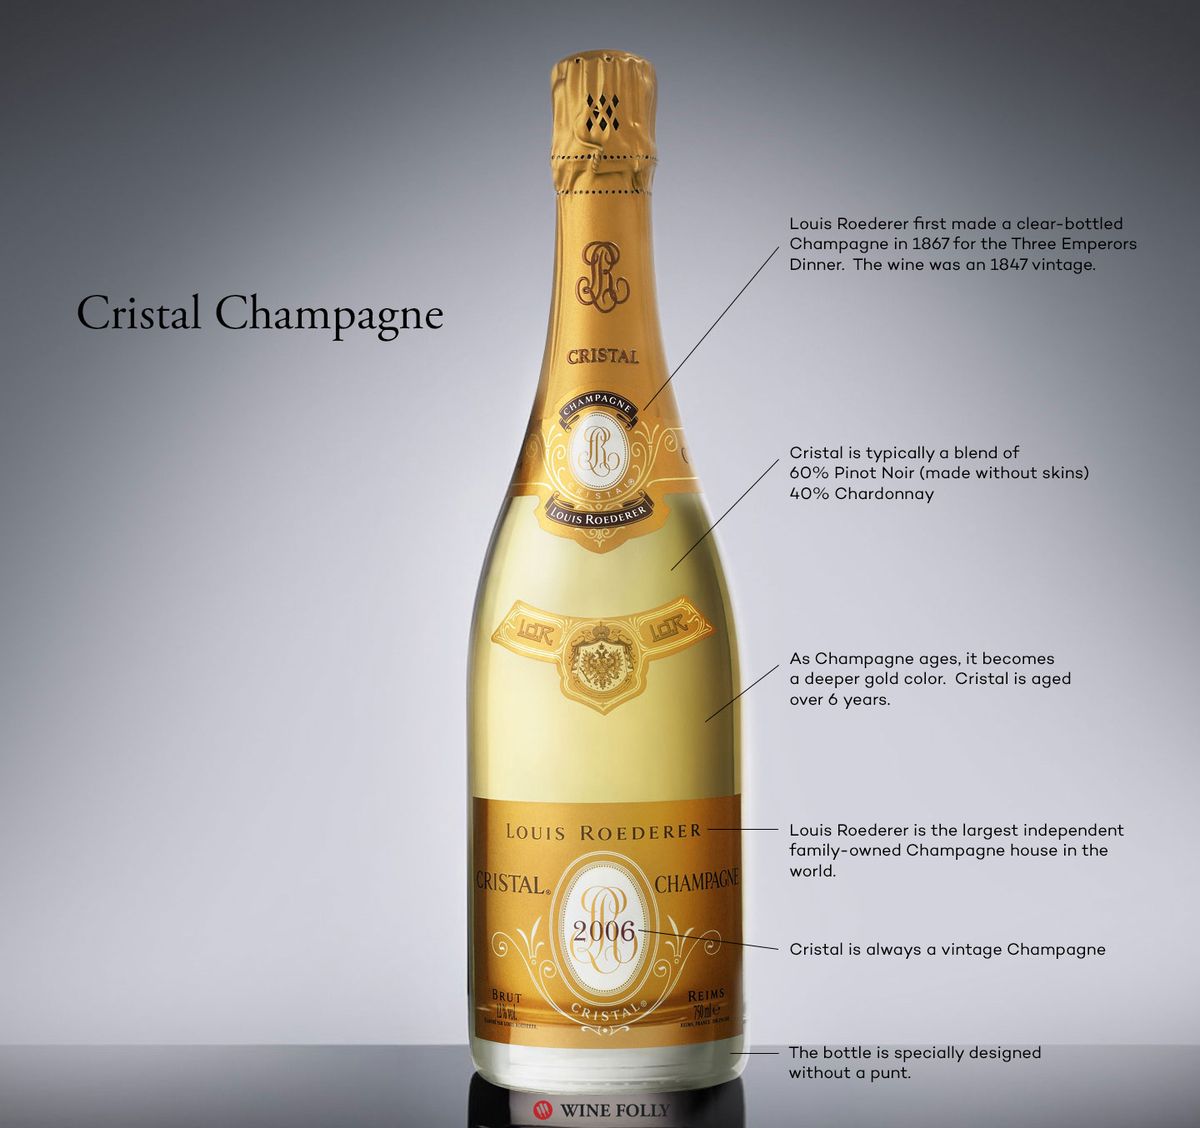 Cristal Champagne (aka